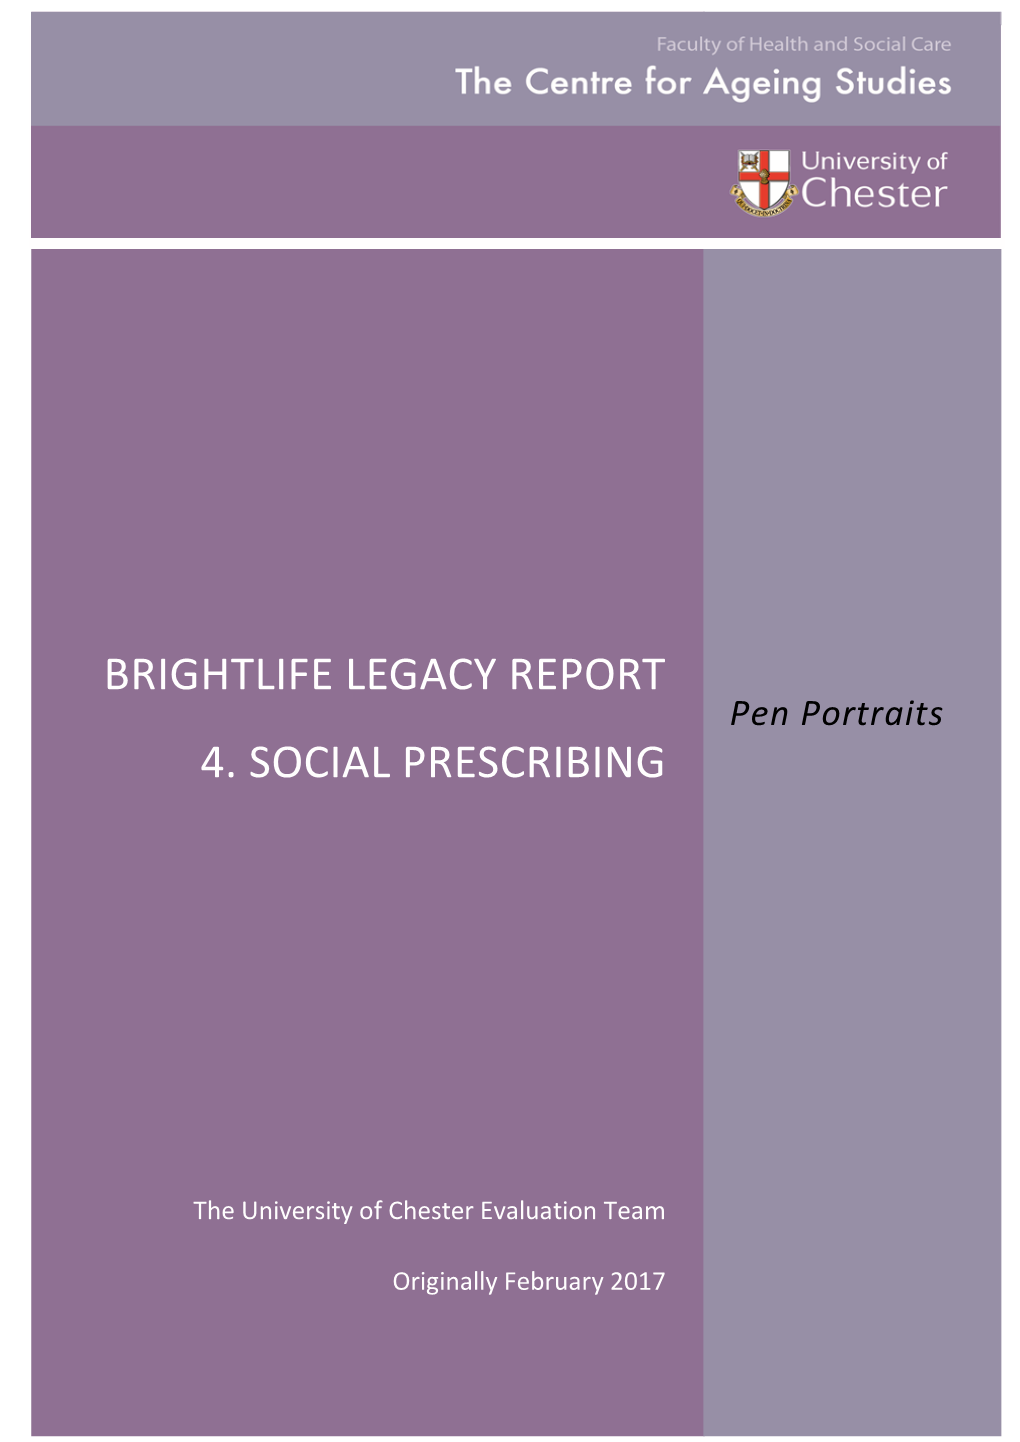 Brightlife Legacy Report 4. Social Prescribing